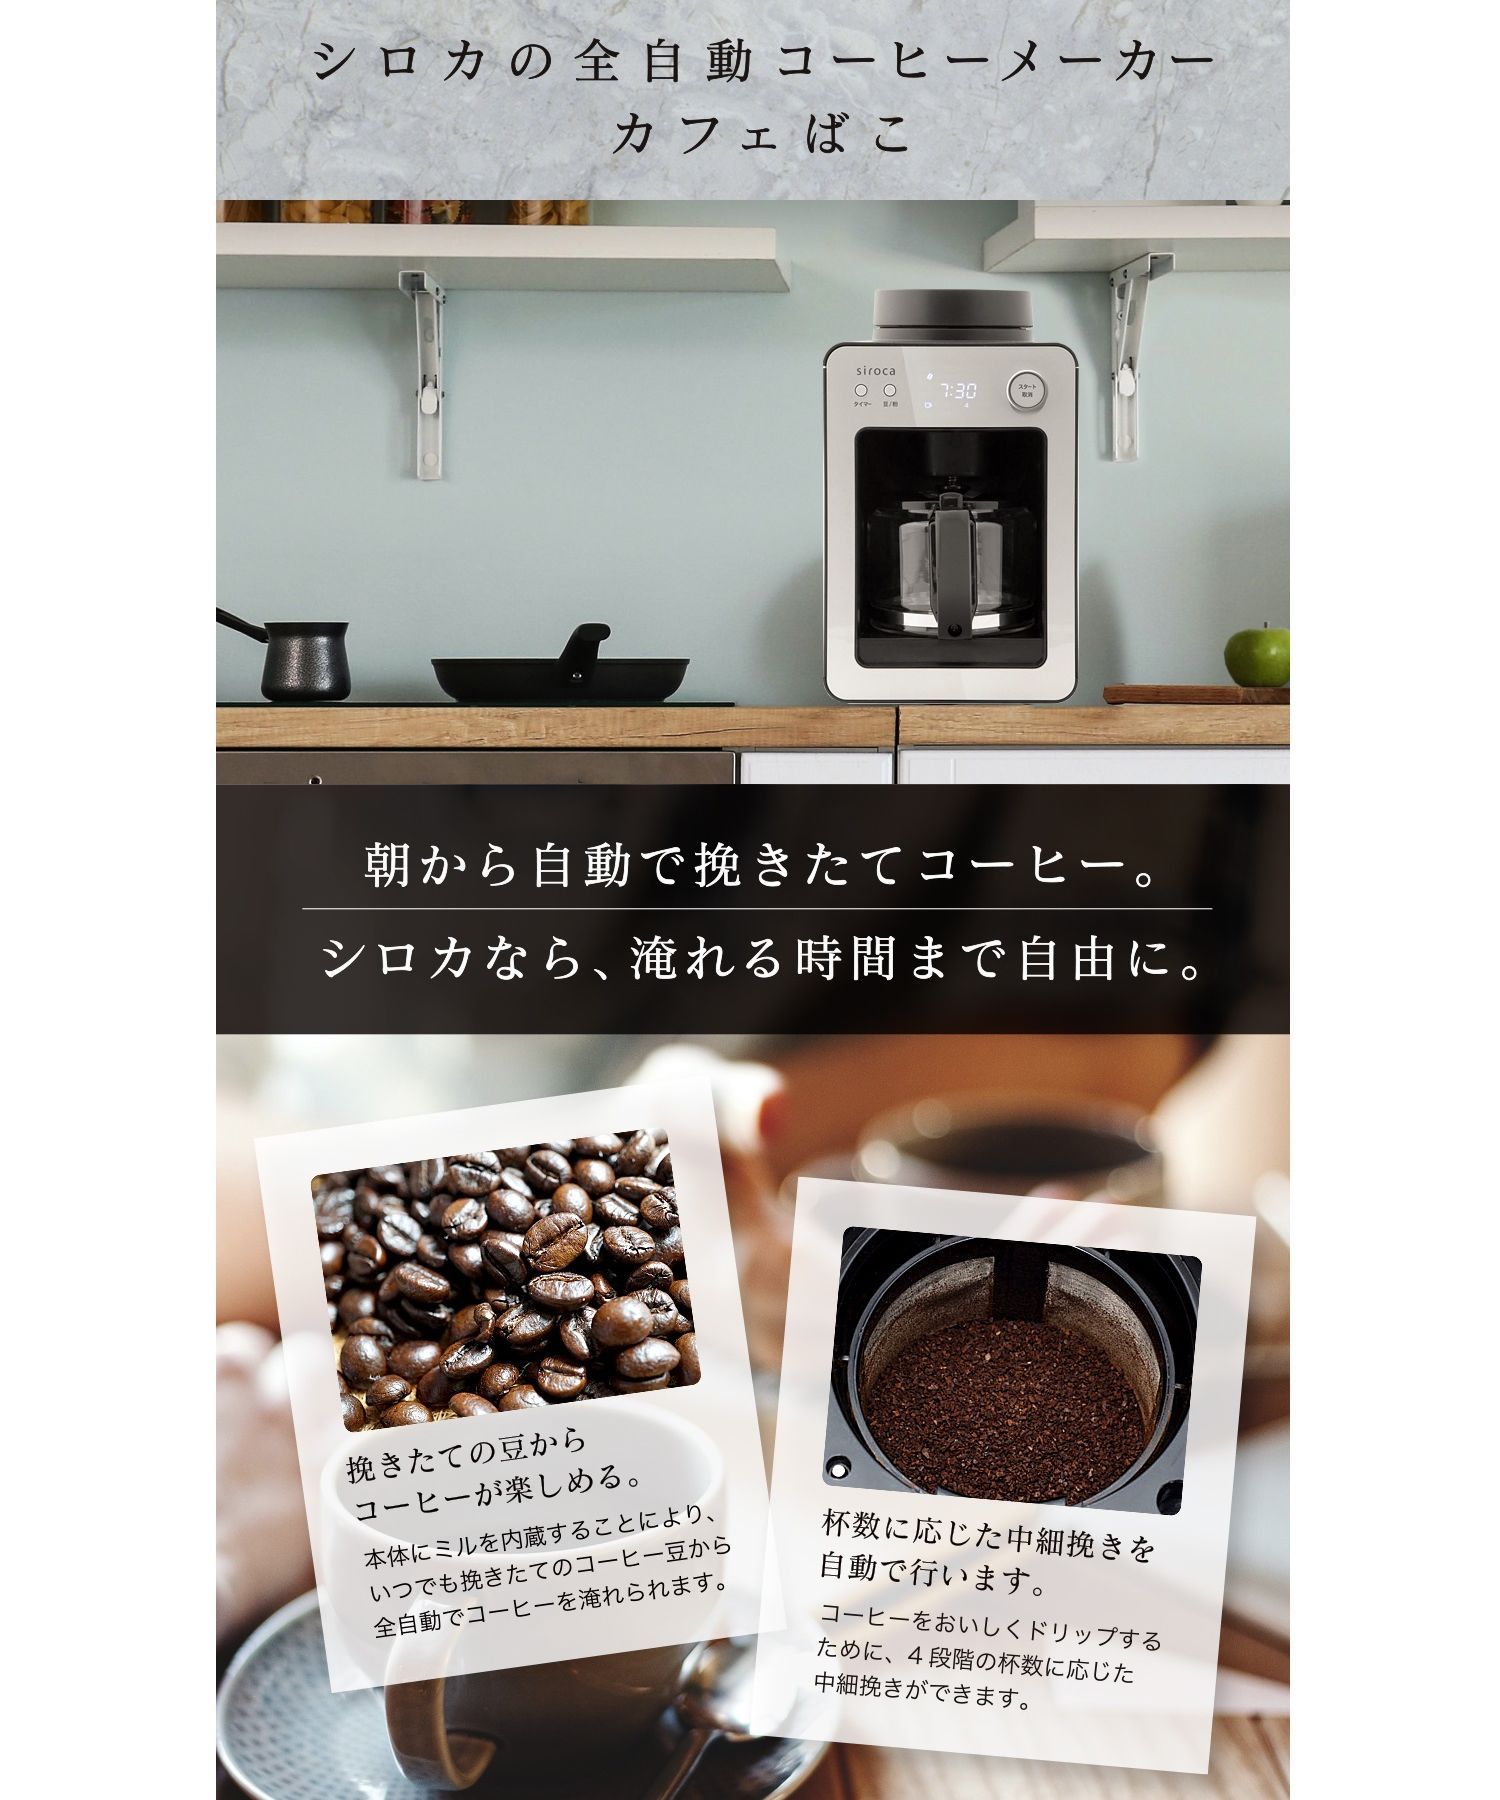 siroca】全自動コーヒーメーカー カフェばこ(ステンレスサーバー) SC 